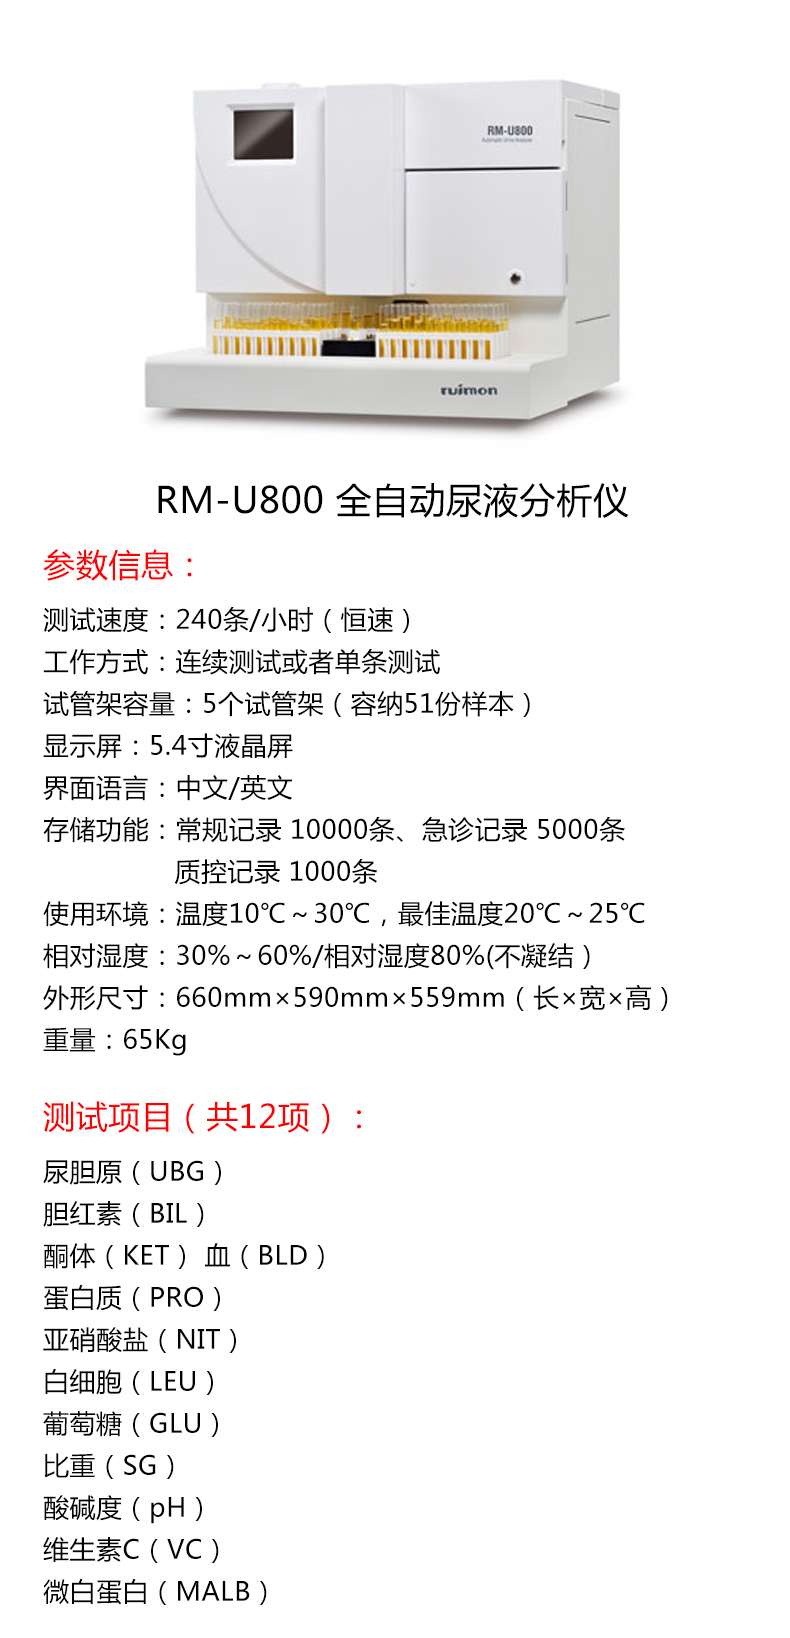 润盟全自动尿液分析仪RM-U800 产品特点